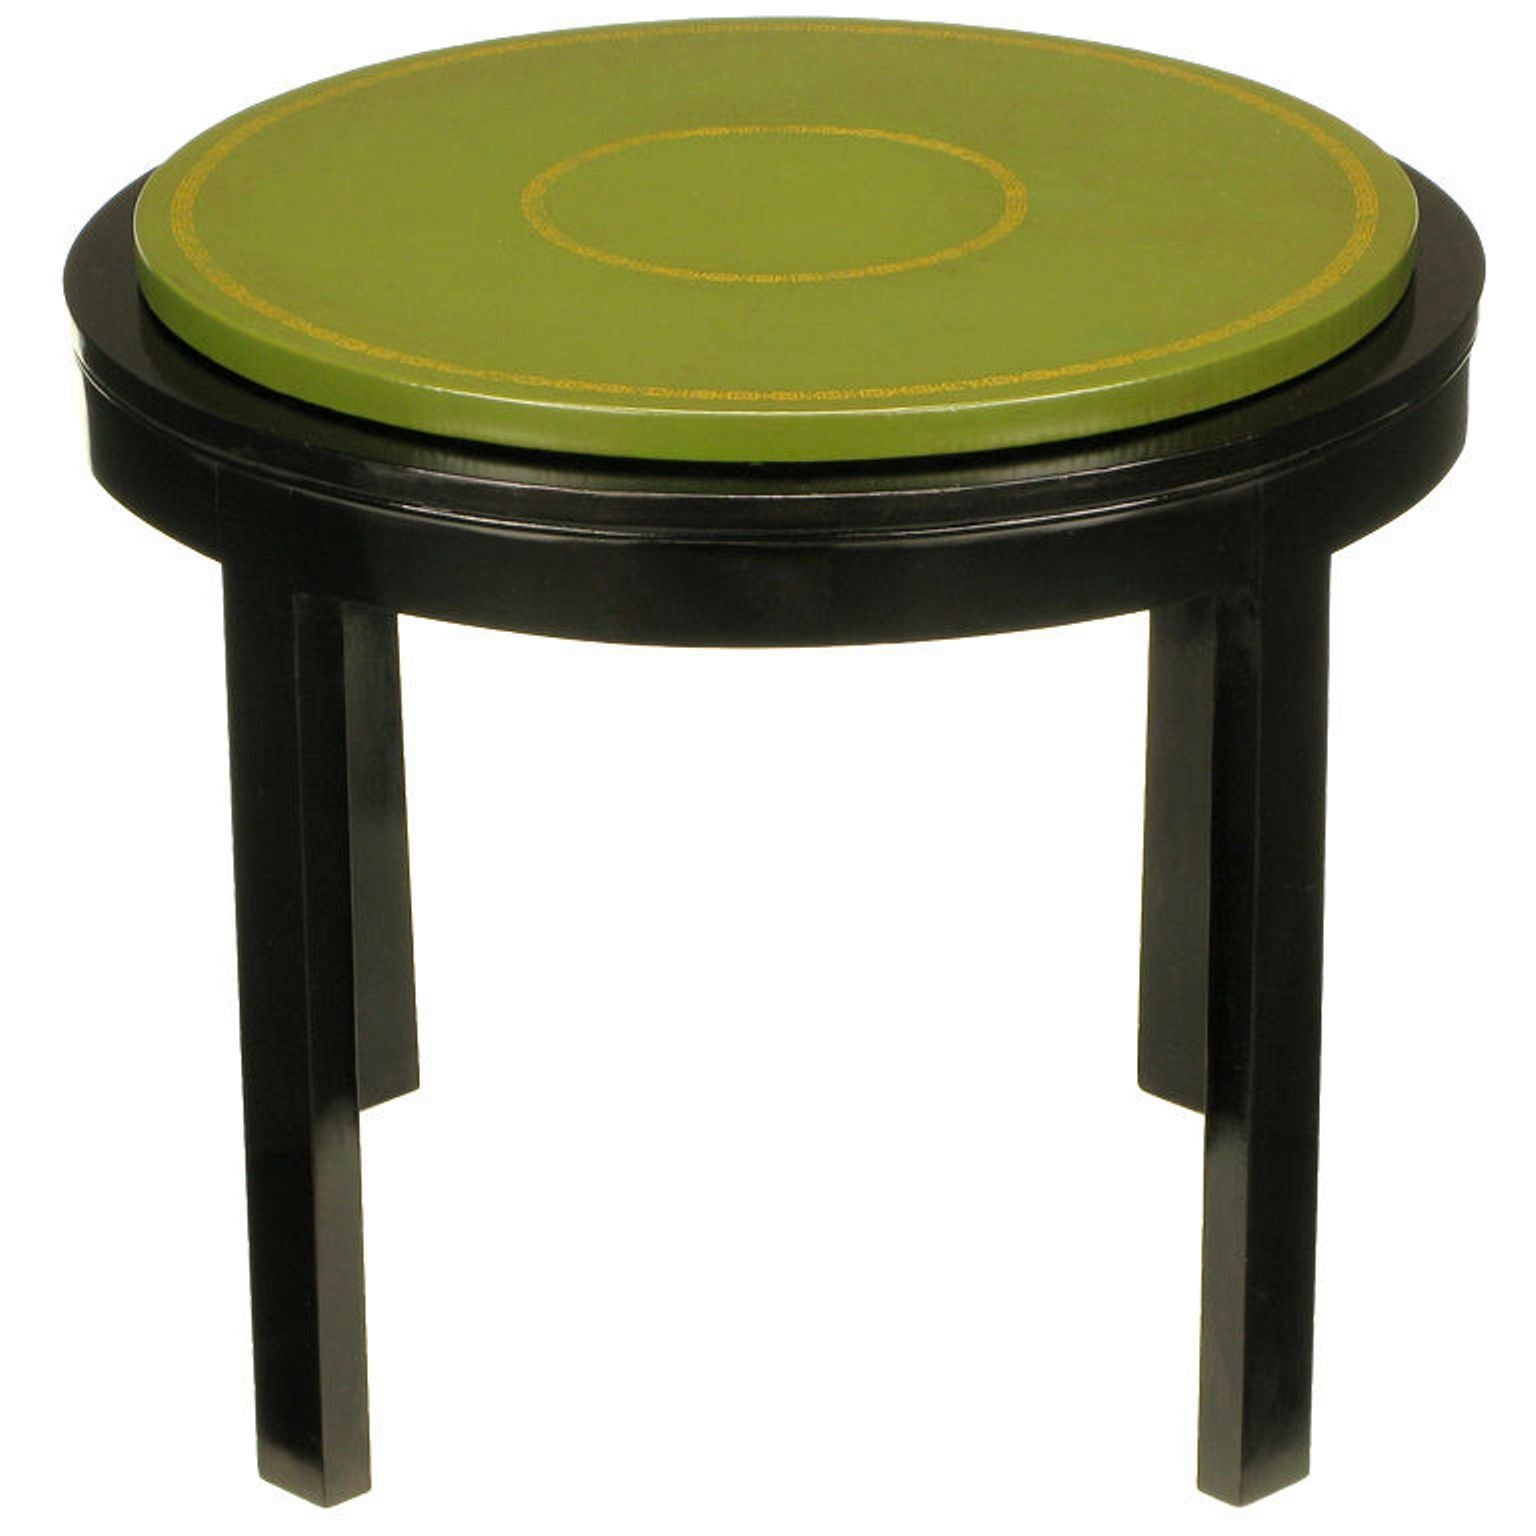 Table d'extrémité ronde en cuir vert ébénisé et ouvragé